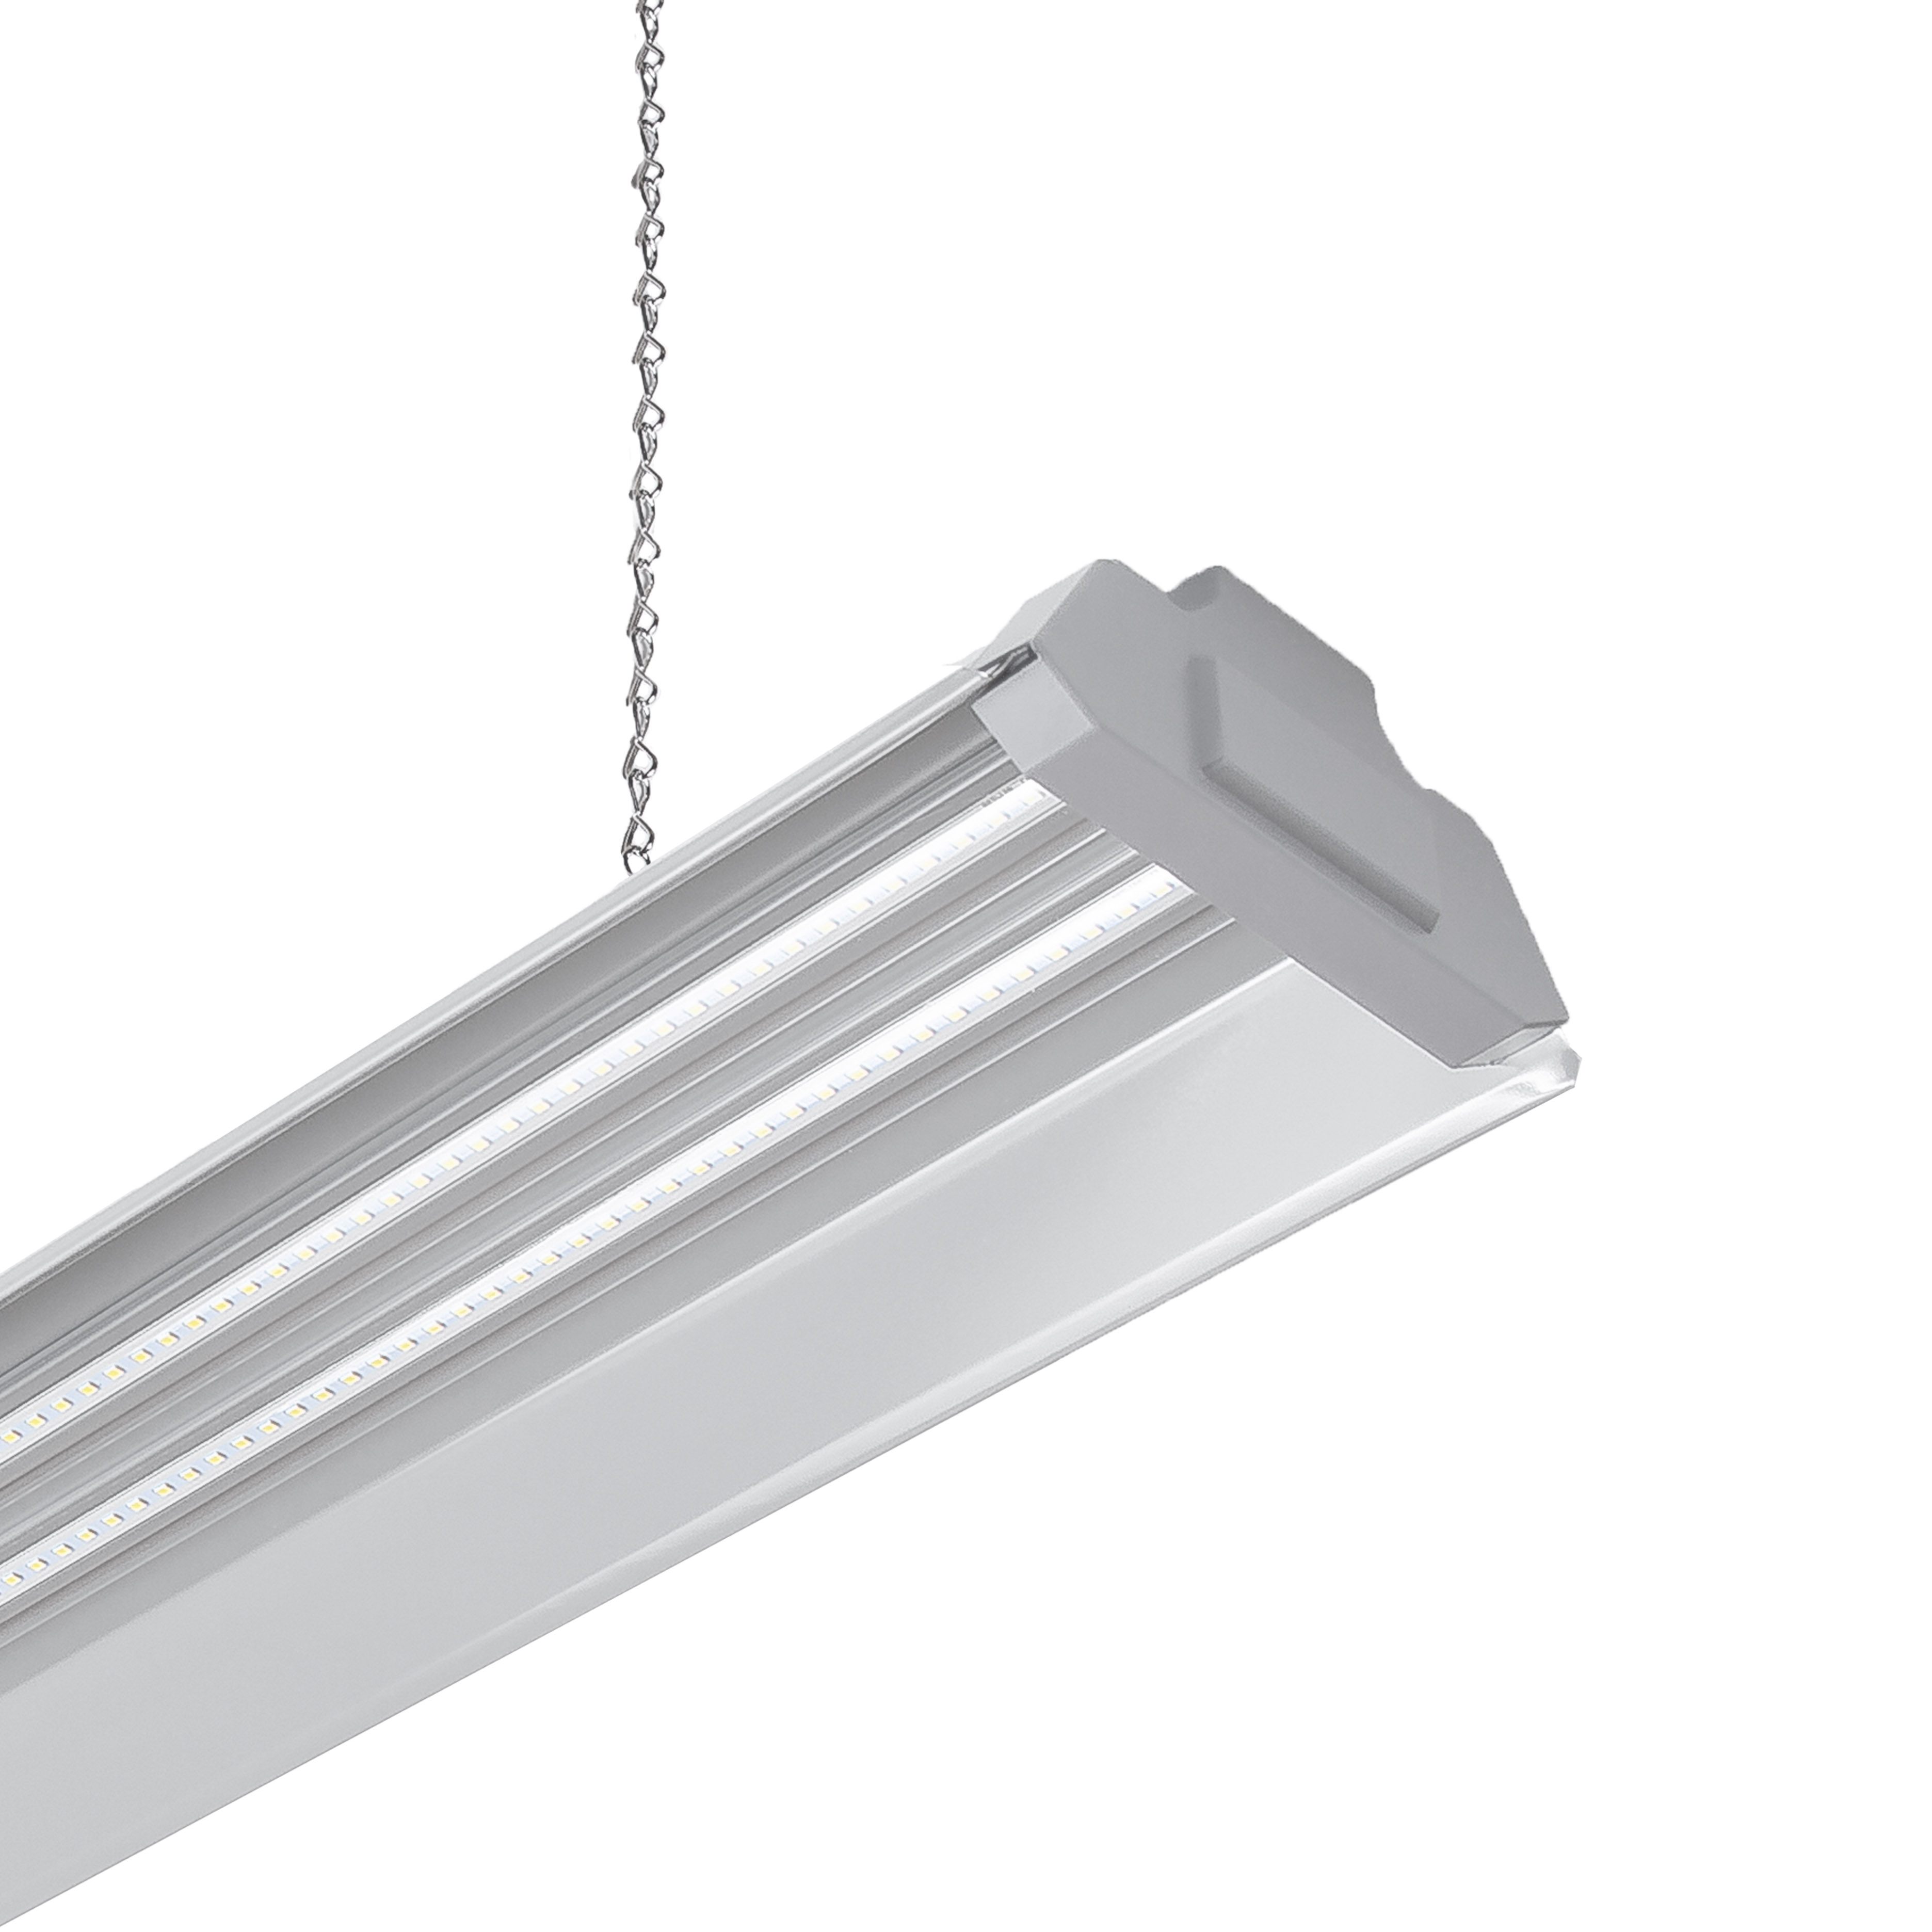 Hyper Tough 4 ft Steel, 5000 Lumen LED Shop Light, Grey - image 2 of 8